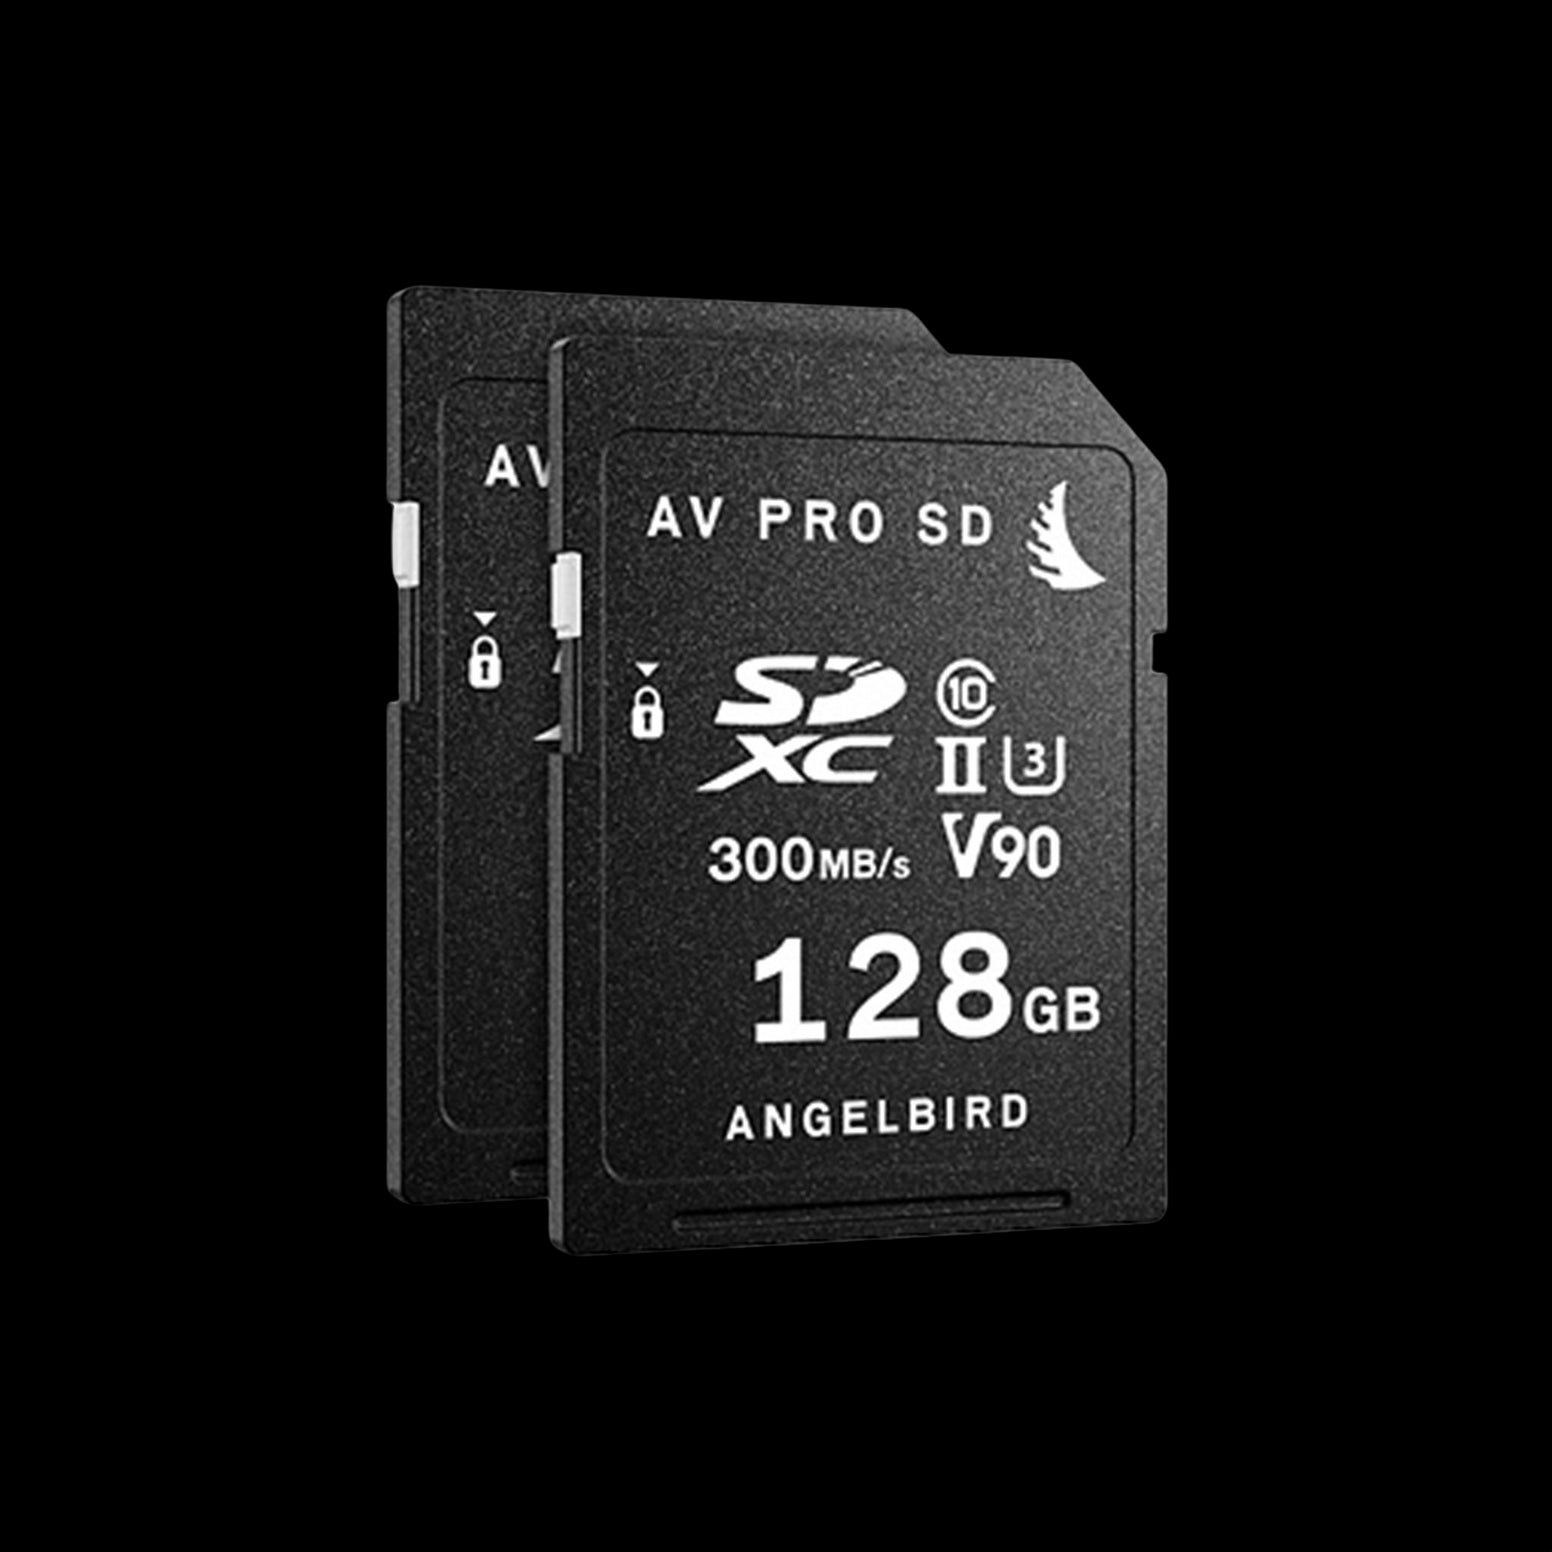 Angelbird Match Pack for Panasonic GH5/GH5S - 2 x 128GB AV PRO V90 Memory Cards